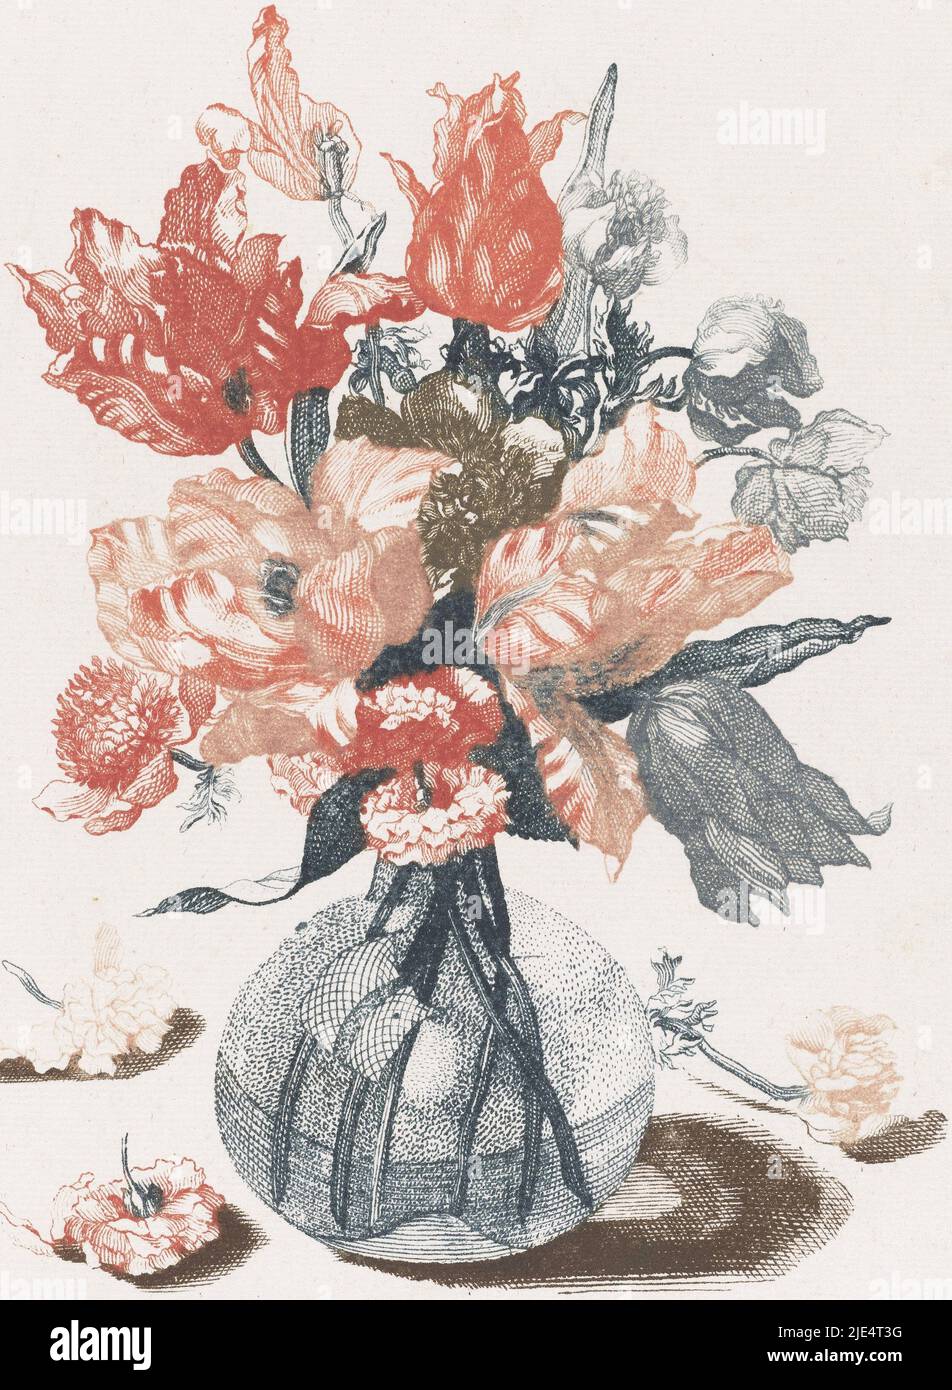 Vase en verre avec tulipes rouges et autres fleurs. A côté du vase trois fleurs tombées, cinq gravures de fleurs dans un vase en verre fleurs dans un vase en verre., imprimeur: Anonyme, Jean Baptiste Monnoyer, Johan Teyler, pays-Bas, 1688 - 1698, papier, gravure, h 209 mm × l 156 mm Banque D'Images